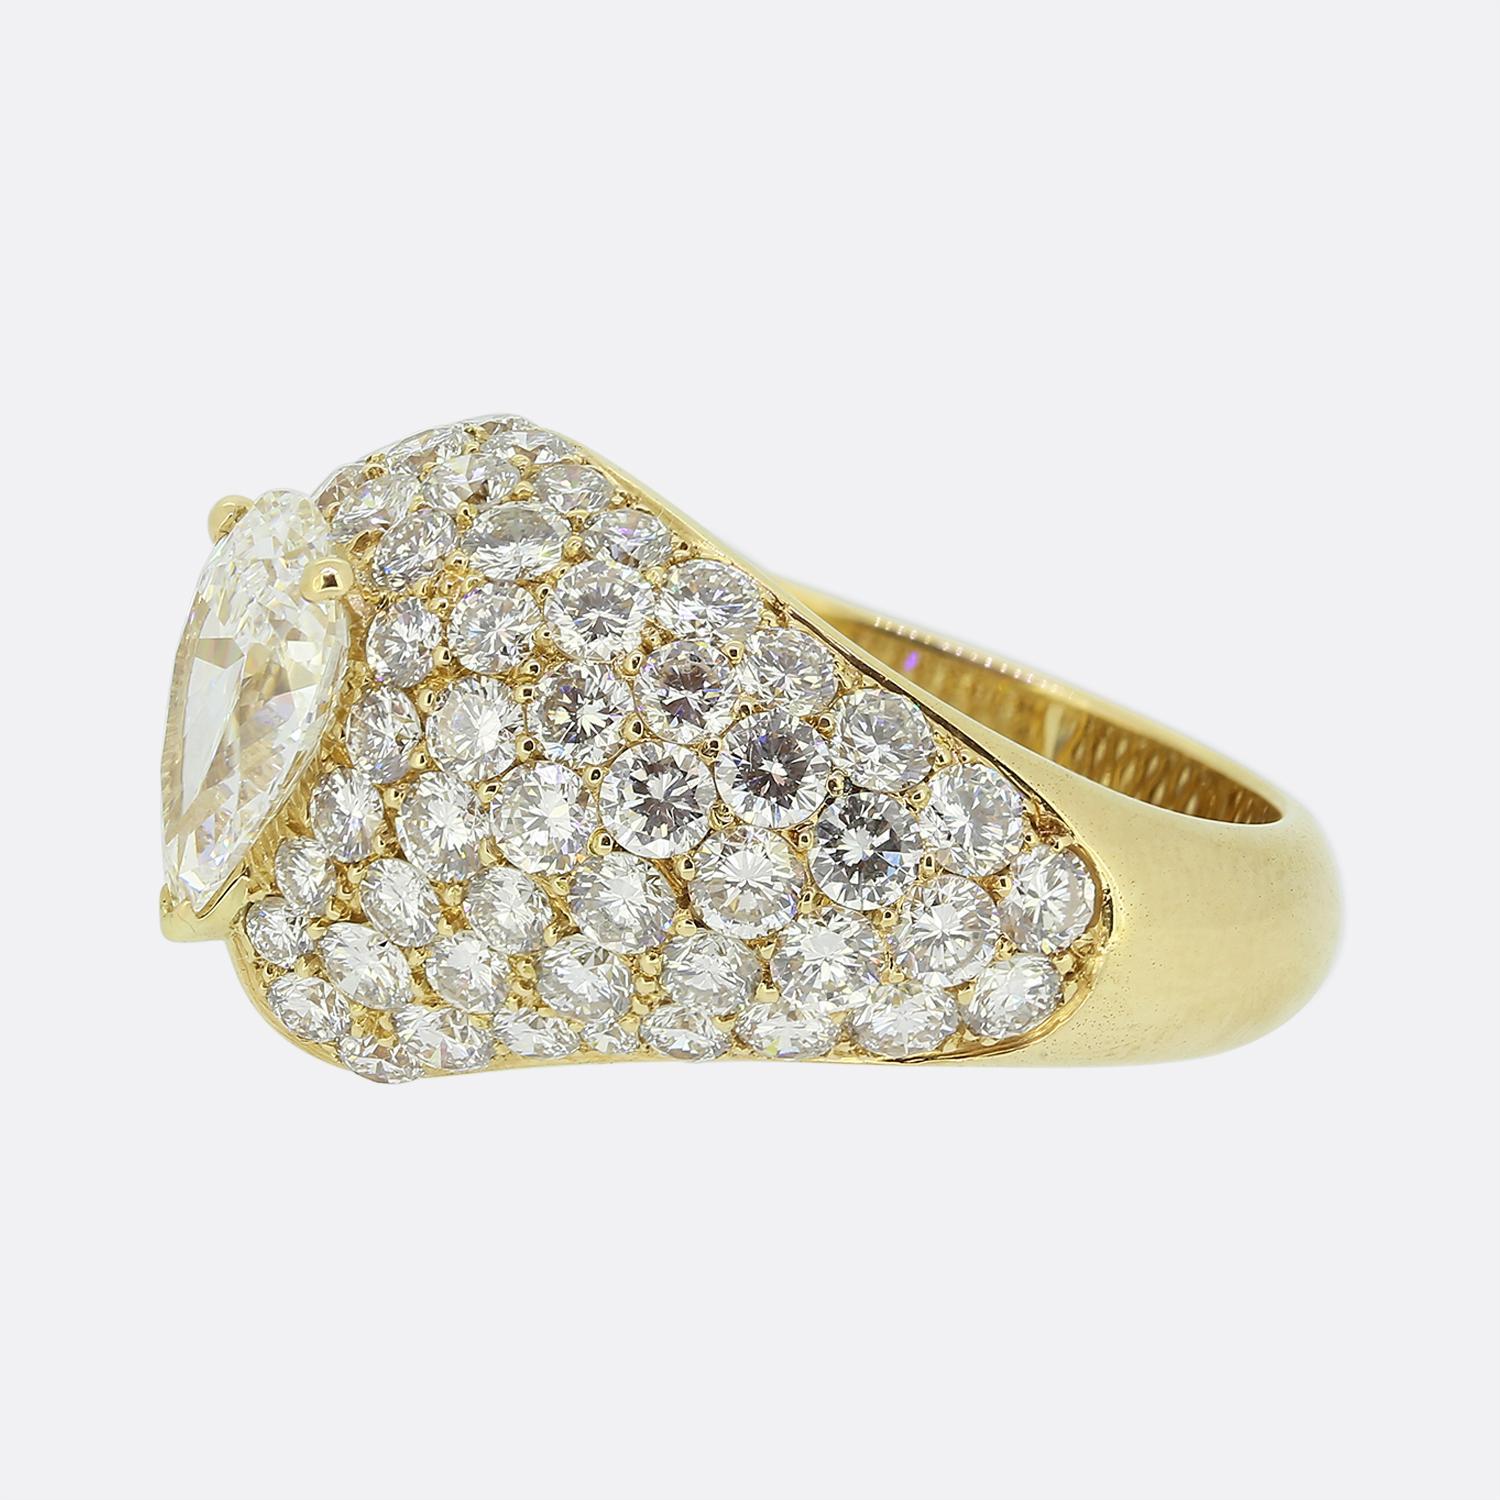 Hier haben wir einen wunderschönen Diamant-Kleiderring aus dem weltbekannten Luxusschmuckhaus Cartier. Dieses Schmuckstück wurde aus 18 Karat Gelbgold gefertigt und verfügt über einen bemerkenswerten Diamanten im Birnenschliff von 1,44 Karat in der